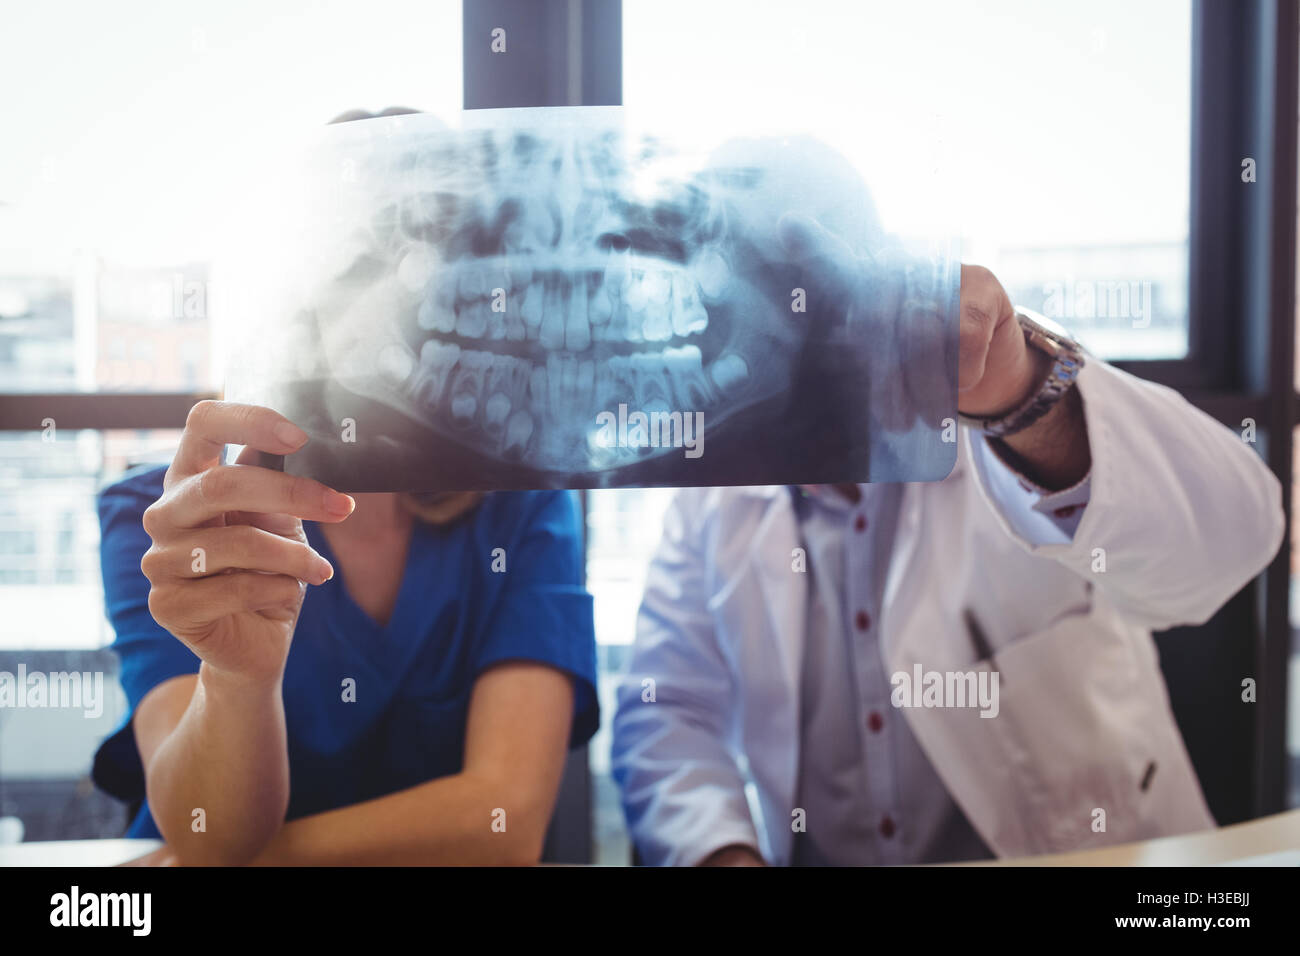 Doctor and nurse examining x-ray Stock Photo